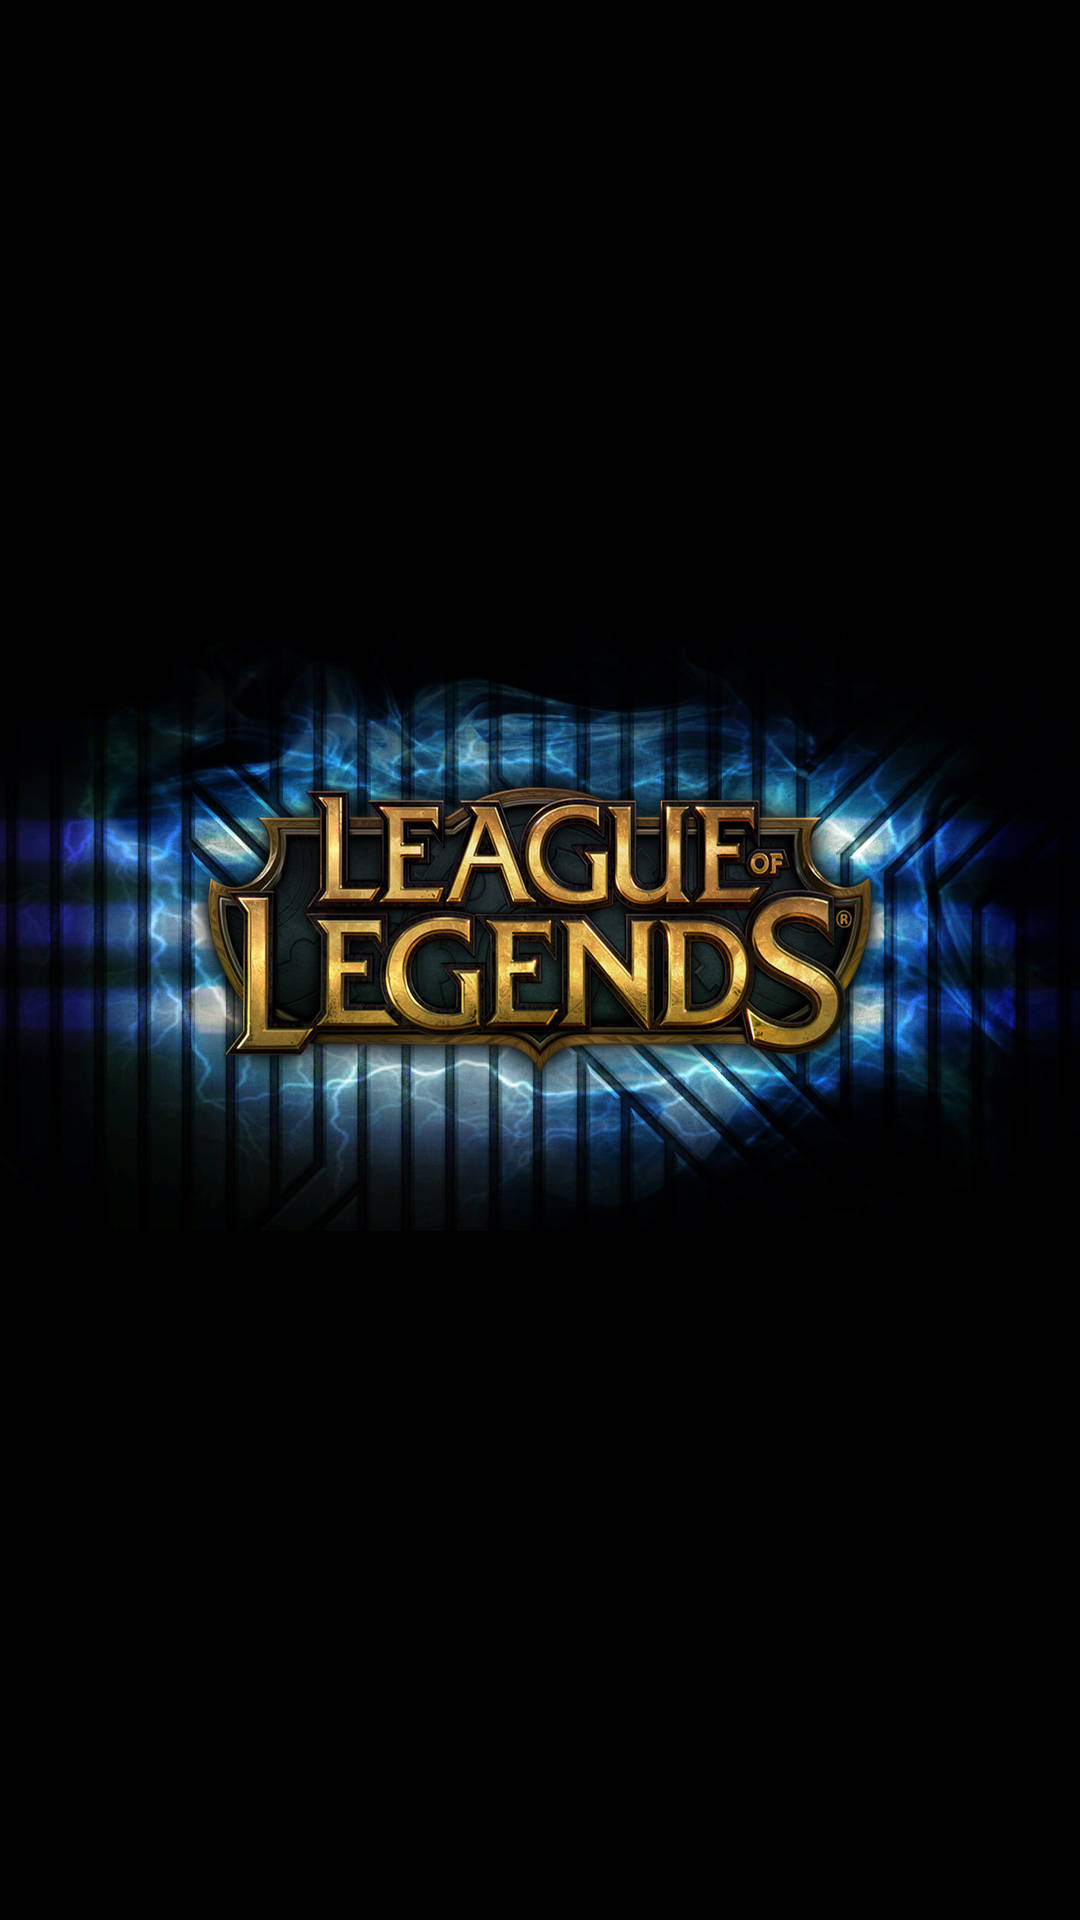 League Of Legends IPhone-logo Wallpaper